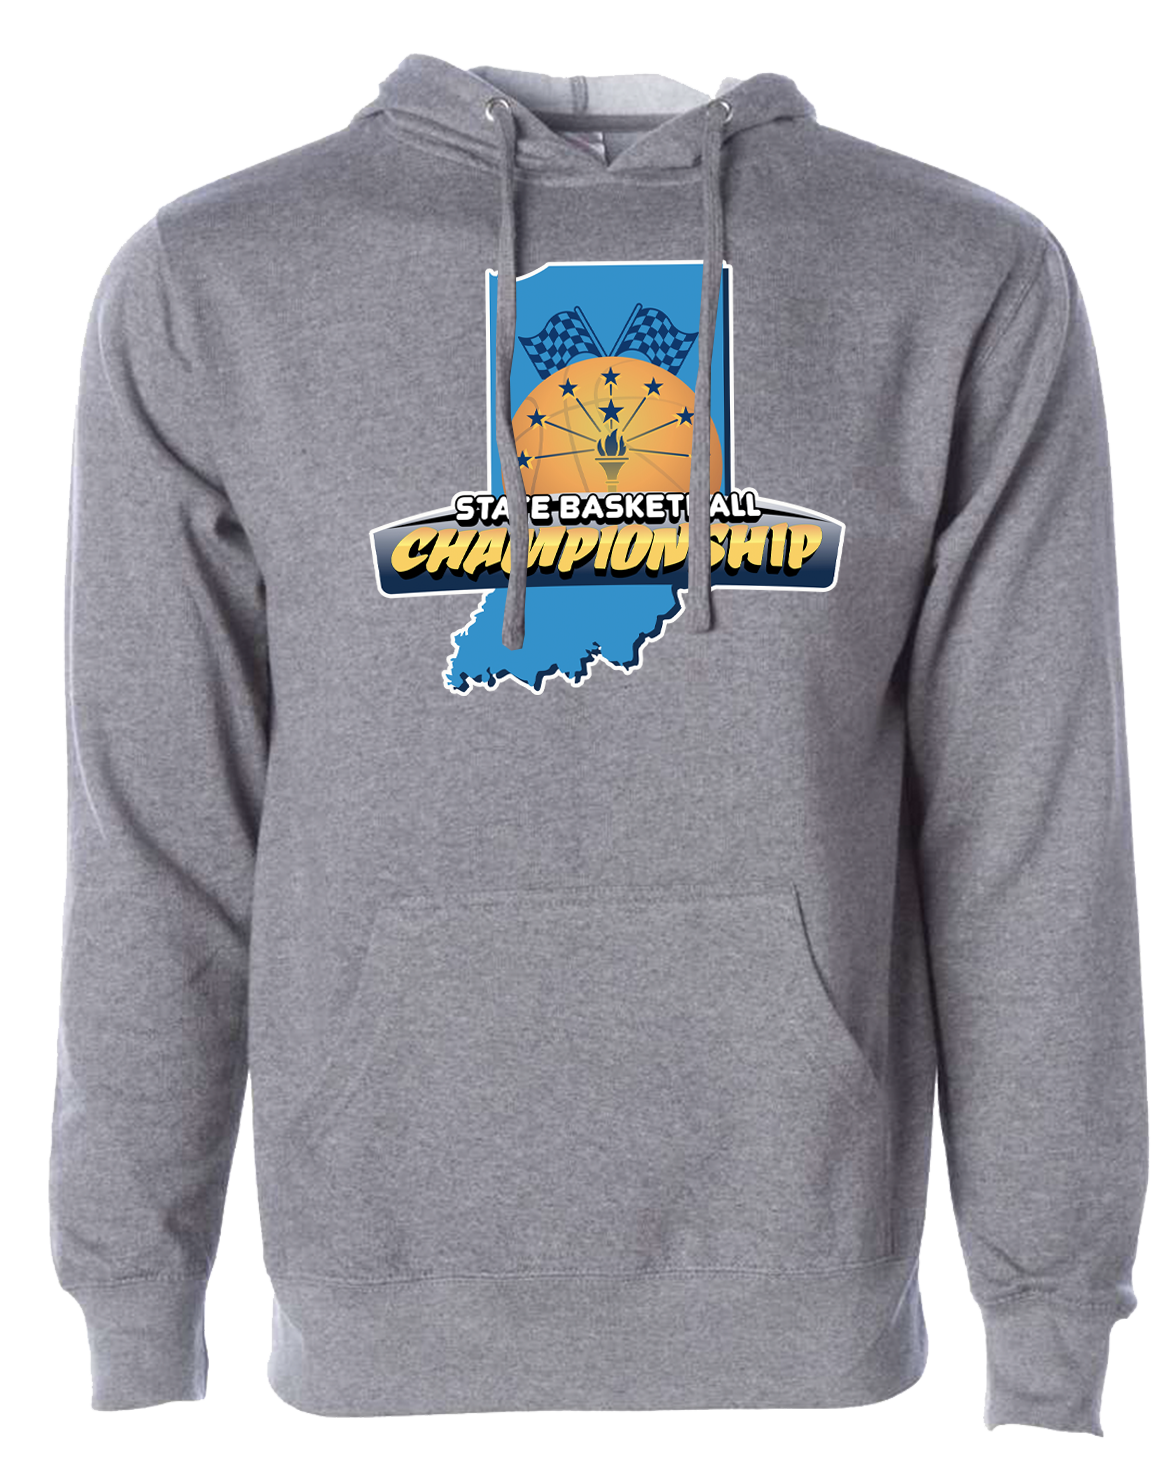 Grey Indiana State Basketball Sweatshirt